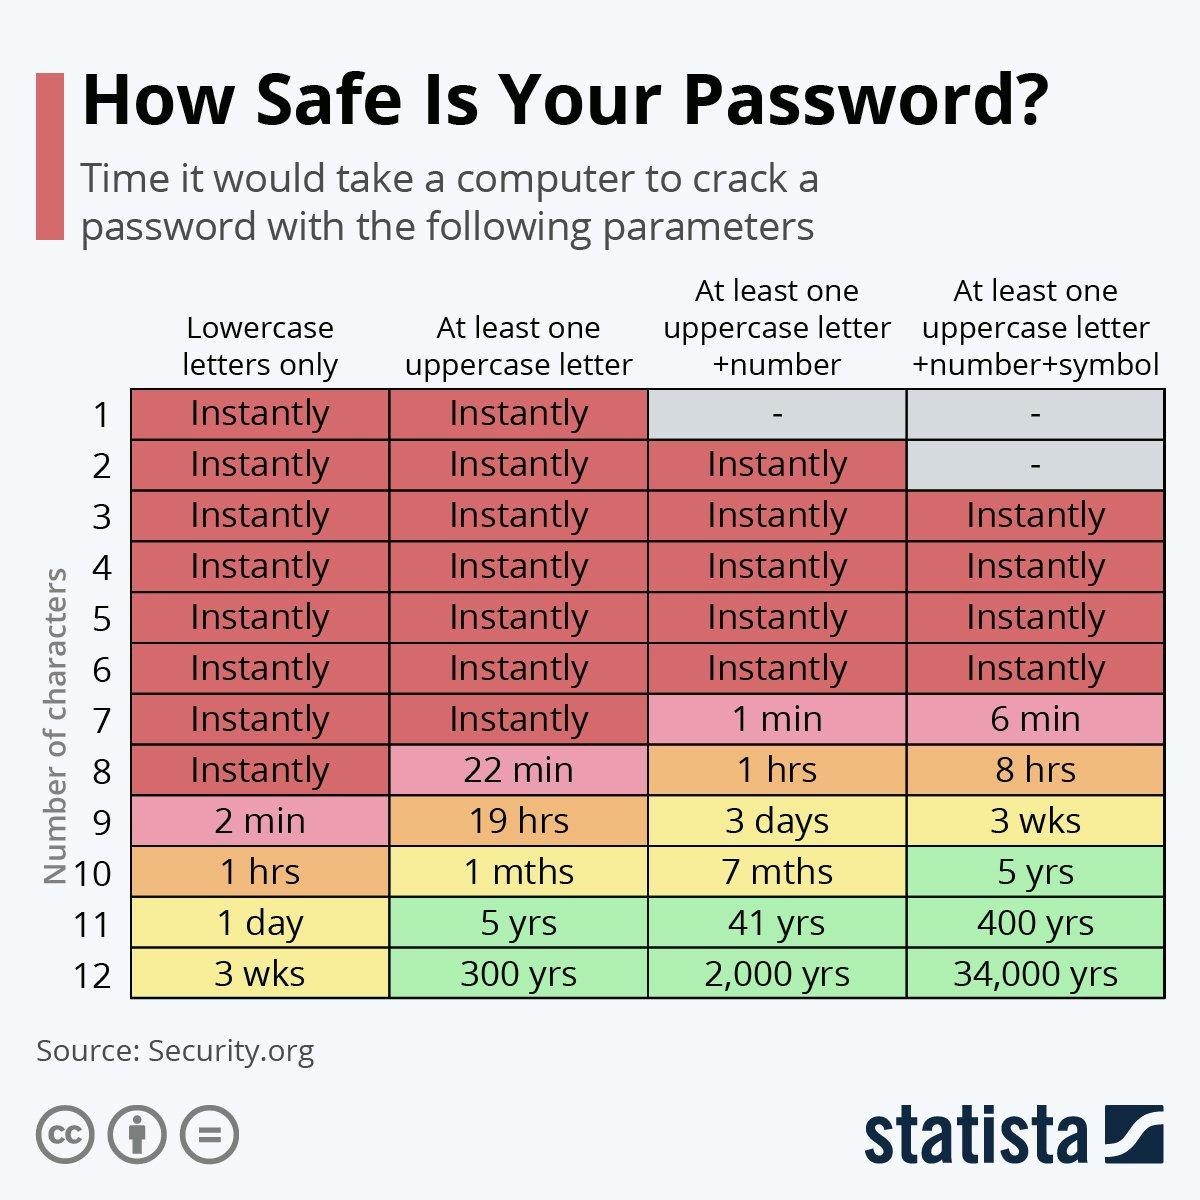 Een tabel die laat zien hoe veilig een wachtwoord is & hoelang het zou duren voor een computer om het wachtwoord te kraken.